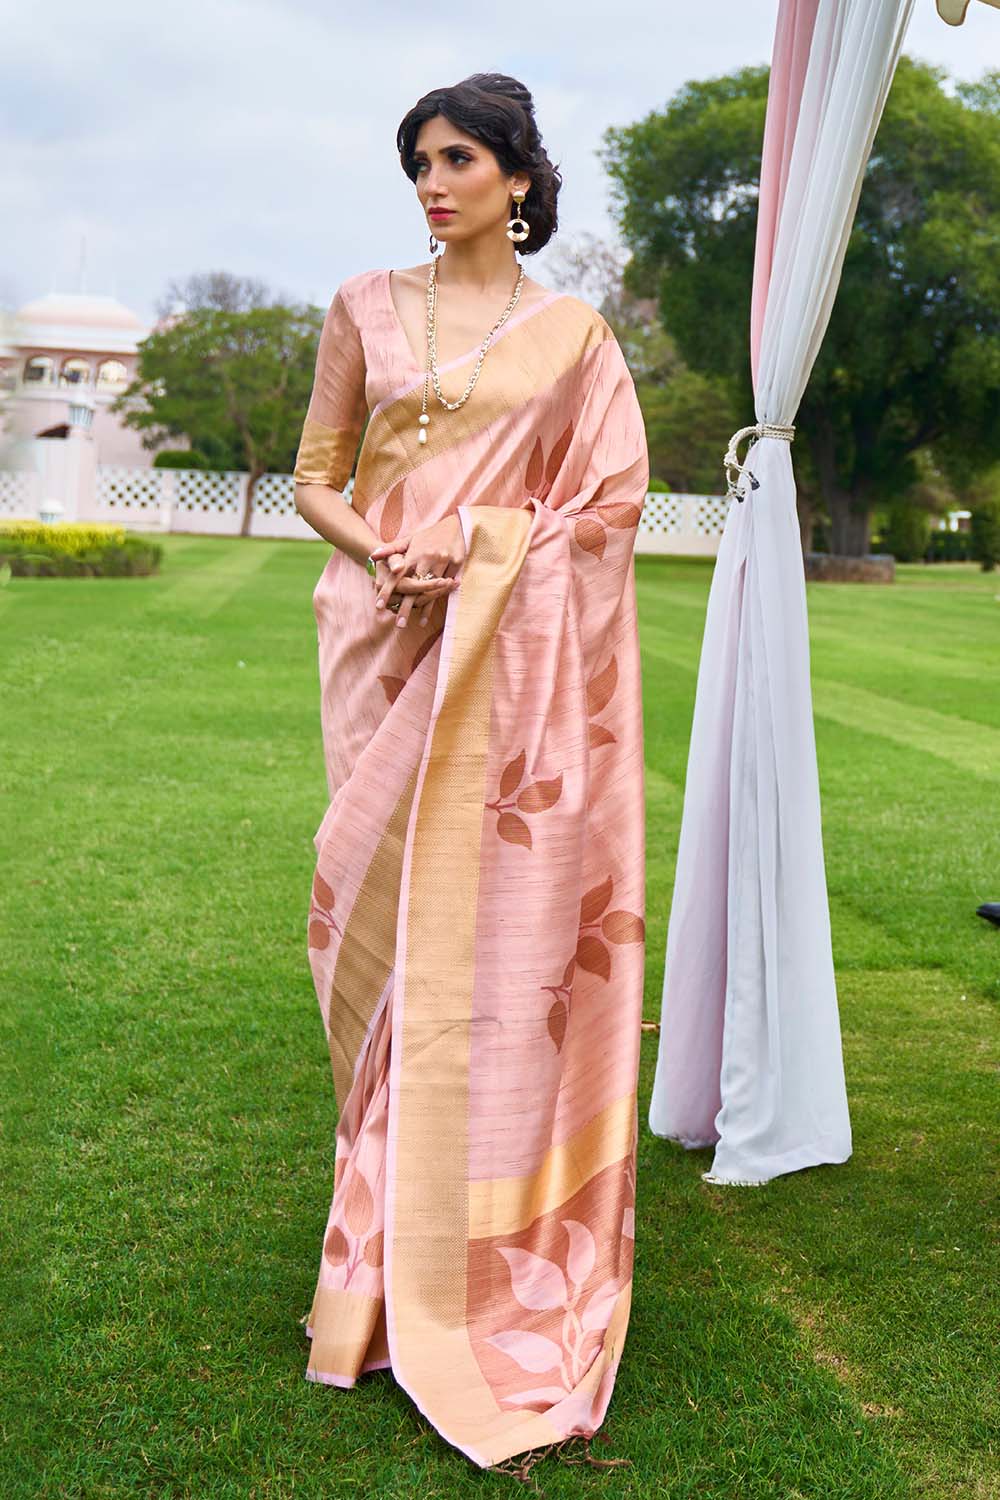 Banarasi - Chanderi Saree Blush Pink Woven Chanderi - Banarasi Fusion Saree saree online